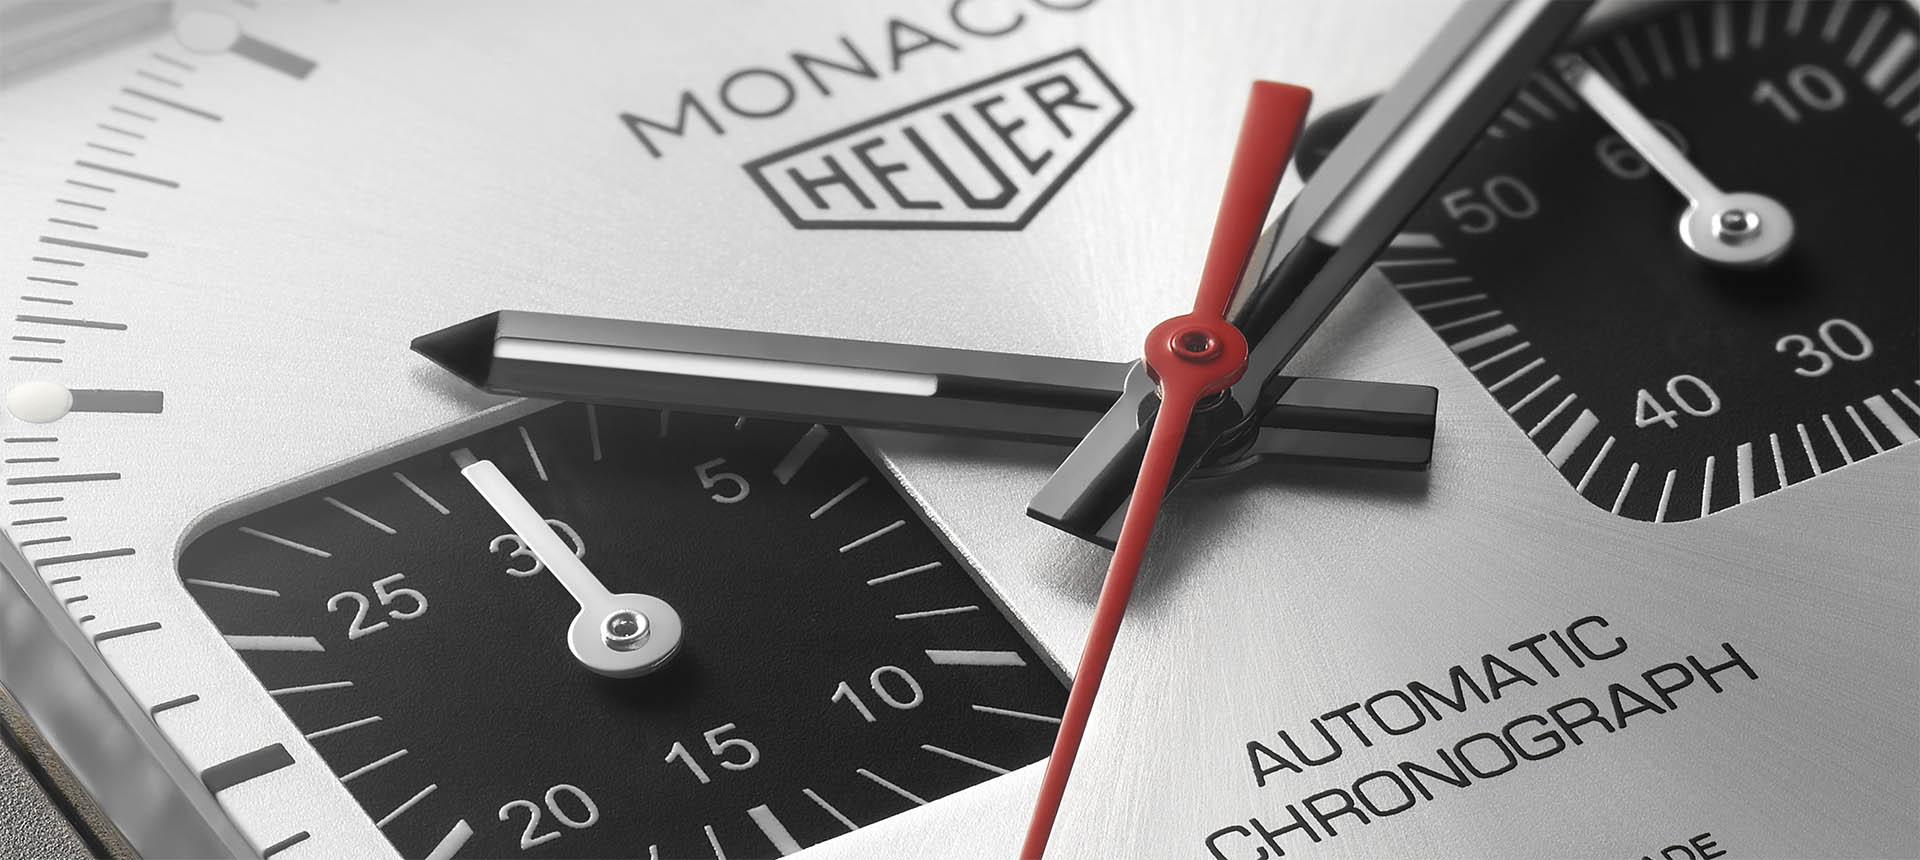 TAG Heuer Monaco Titan Special Edition